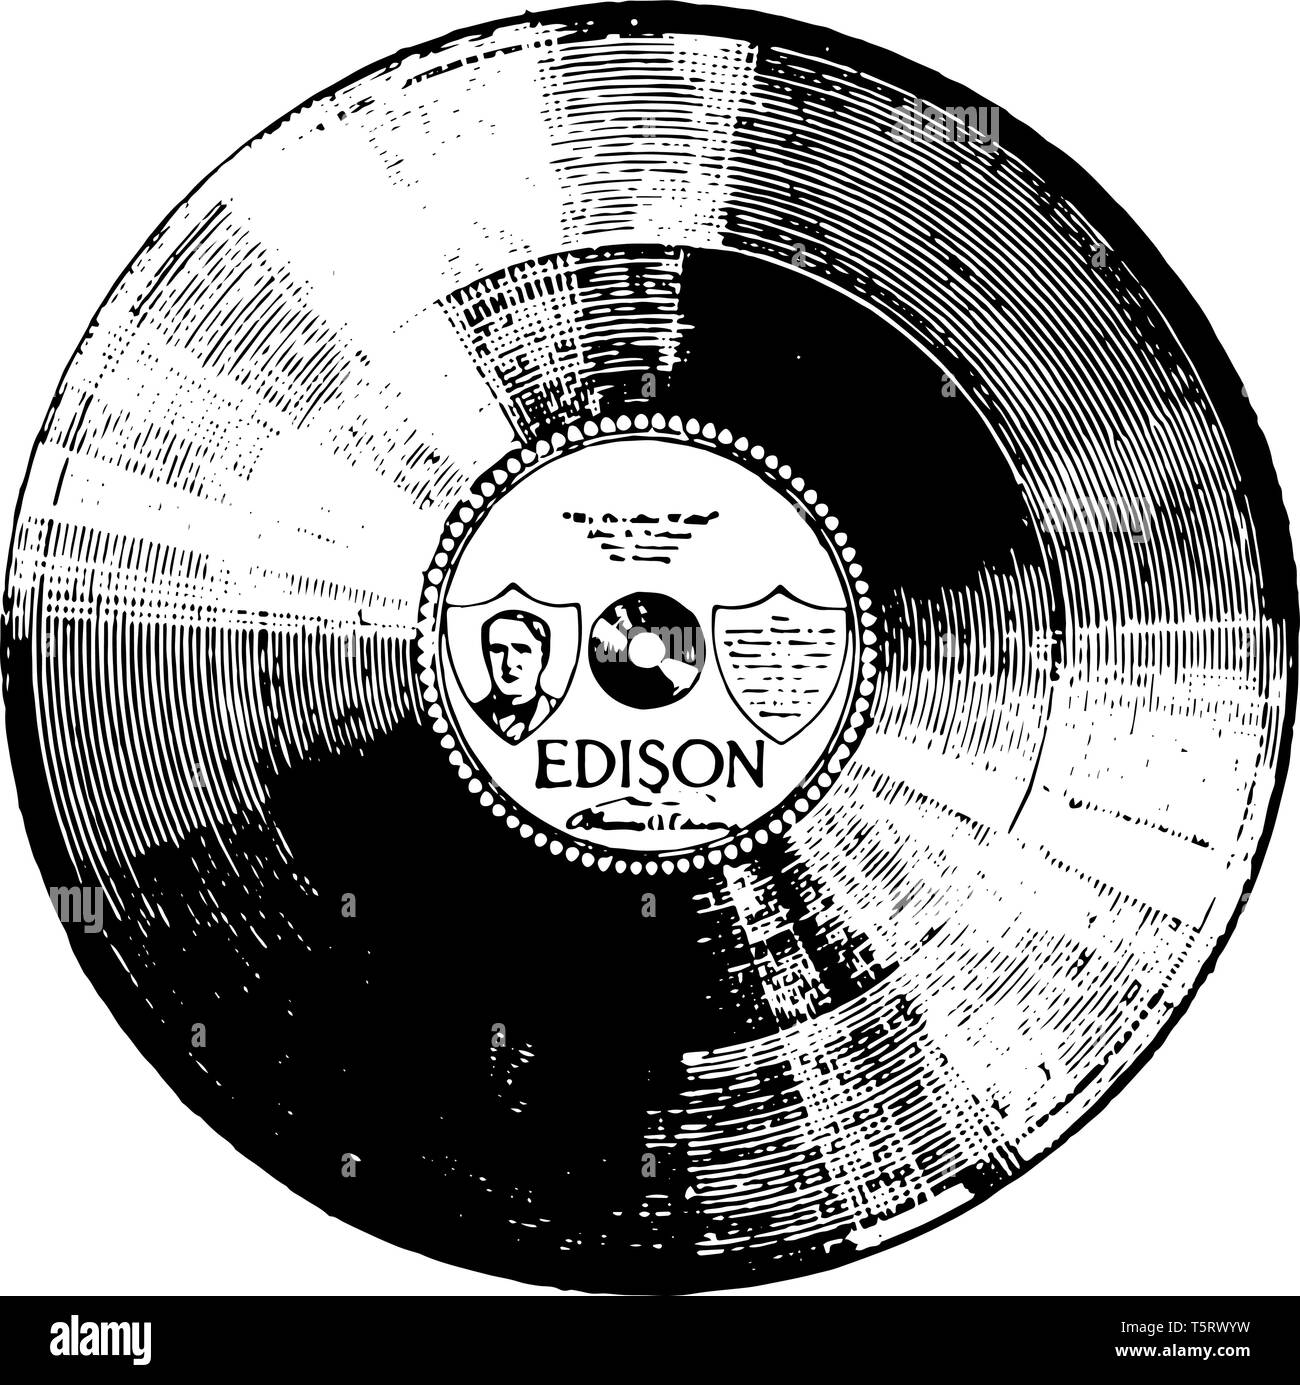 Festplatte Edison record ist eine Art von Phonograph record vermarktet von Thomas ein, vintage Strichzeichnung oder Gravur Abbildung. Stock Vektor